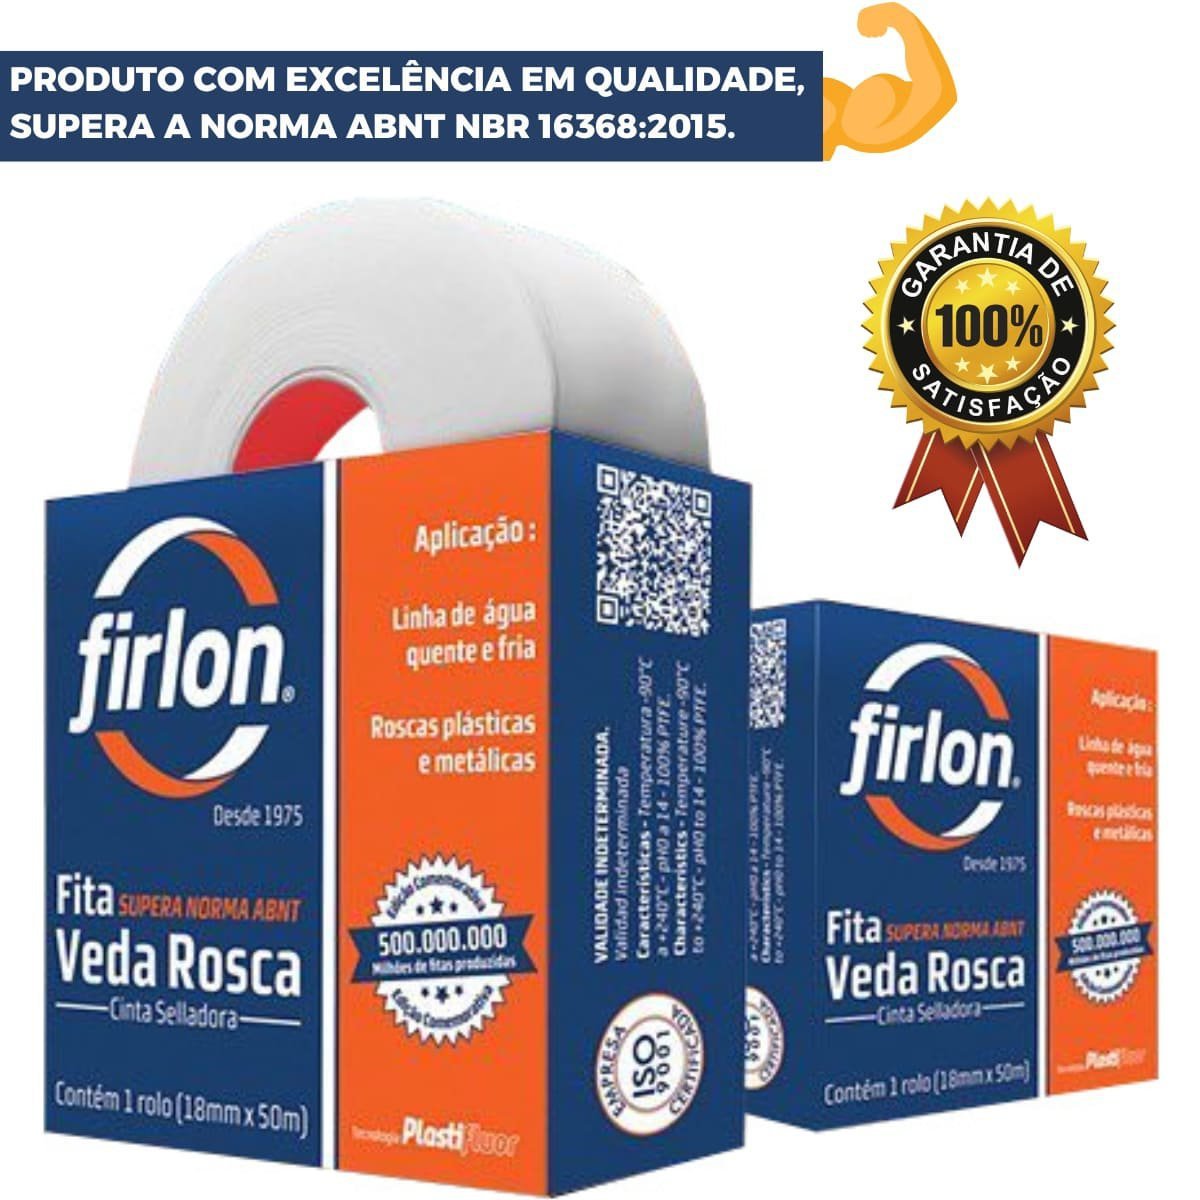 Fita Veda Rosca Teflon 12mm x 5m | Firlon - 4